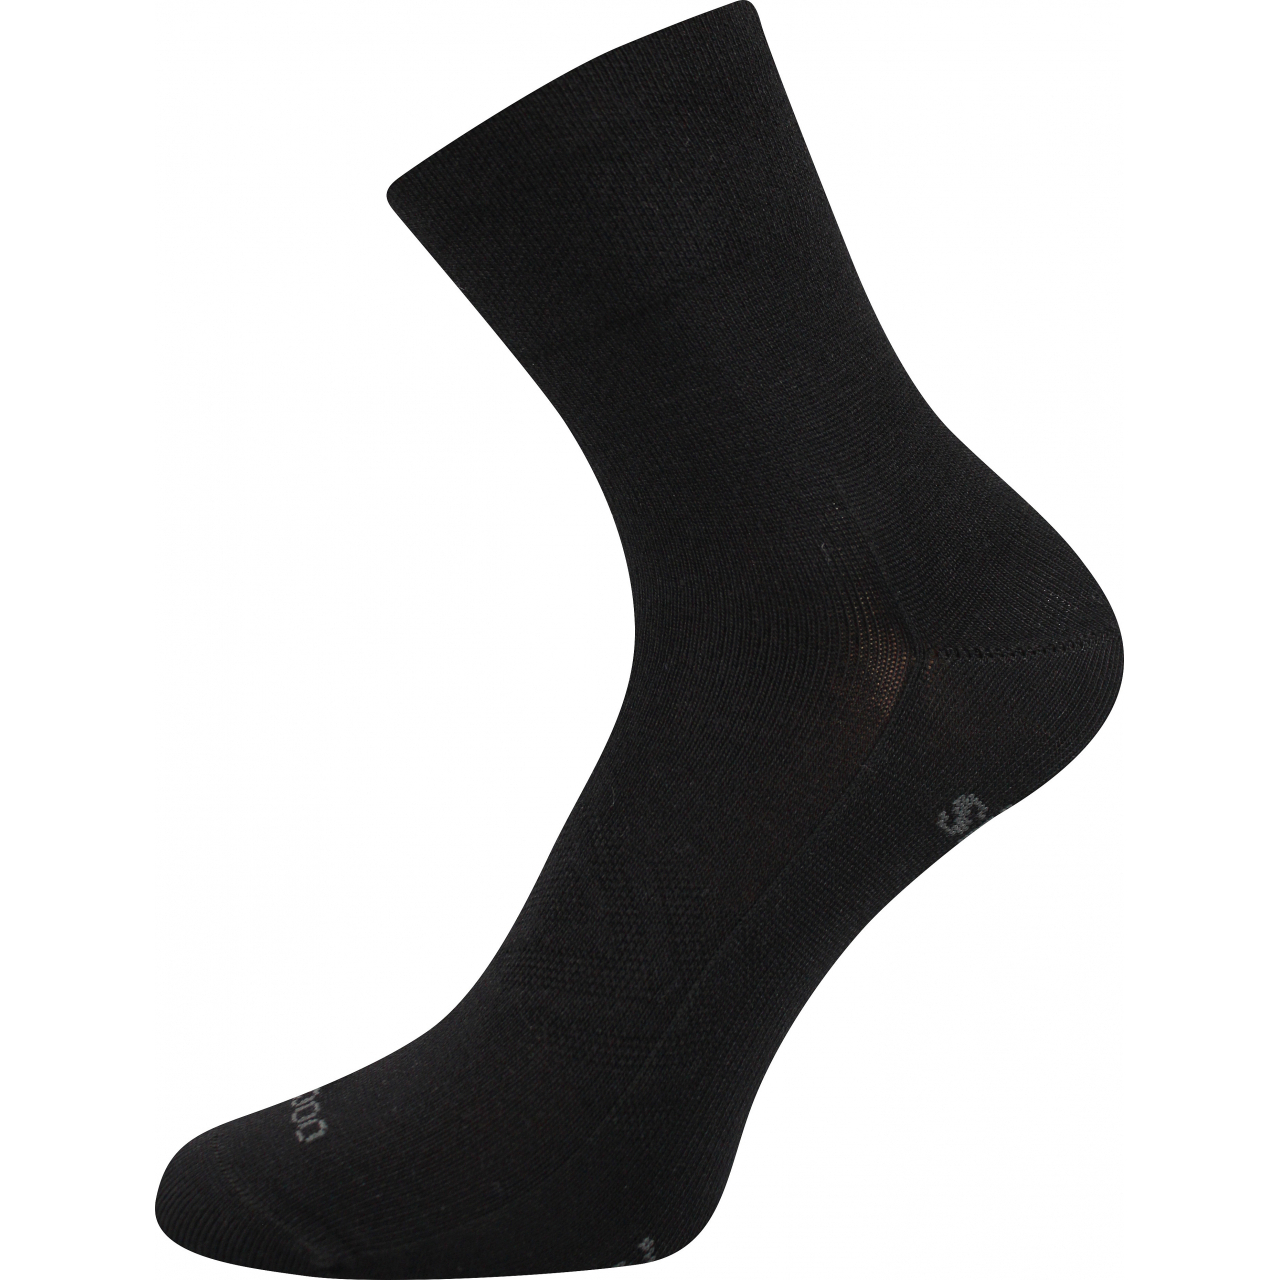 Ponožky sportovní unisex Voxx Baeron - černé, 35-38